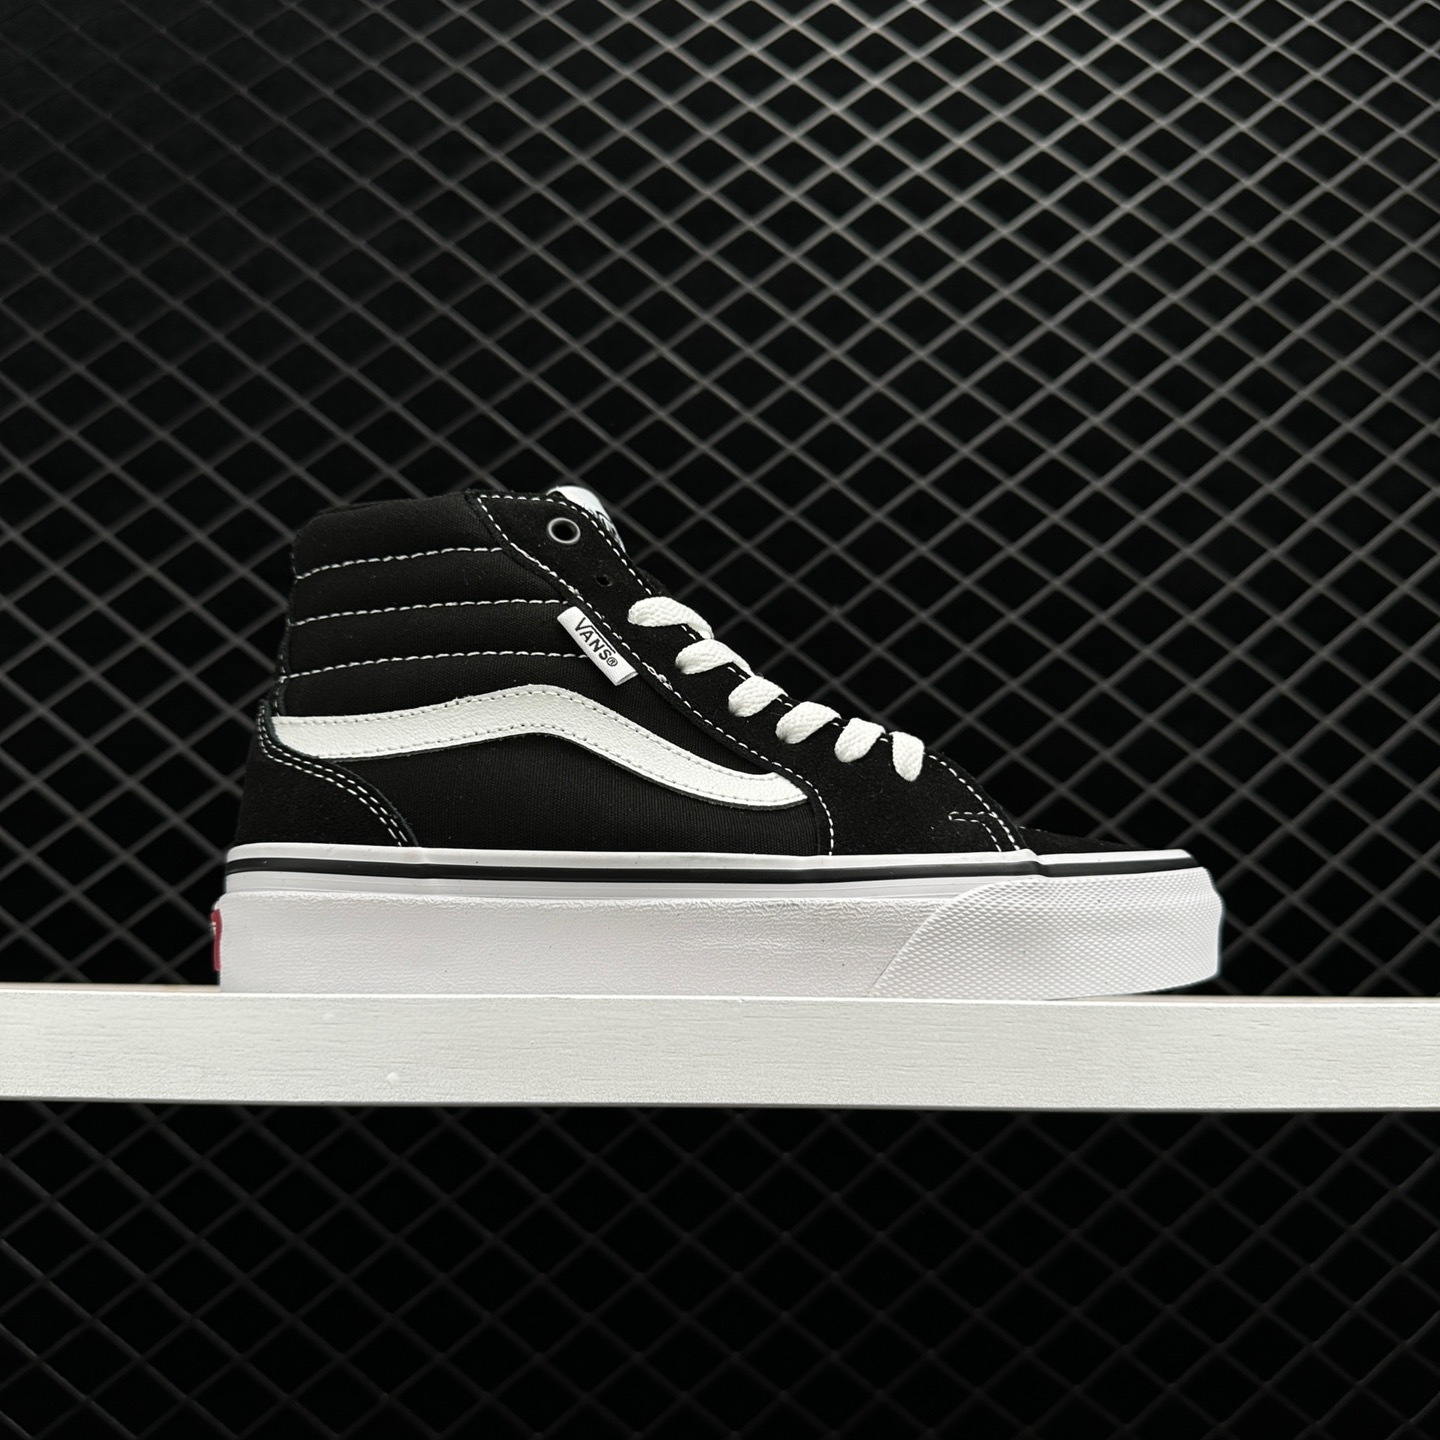 Vans Filmore Hi Platform Black White Skate Shoes VN0A5EM7187 - Stylish Elevated Footwear for Skateboarding and Beyond